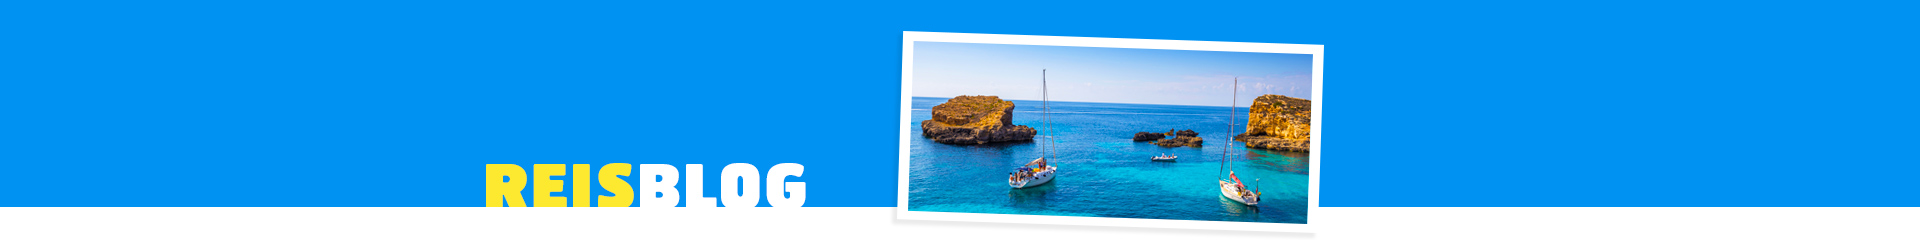 Snorkelen en duiken rondom het kleurrijke Malta